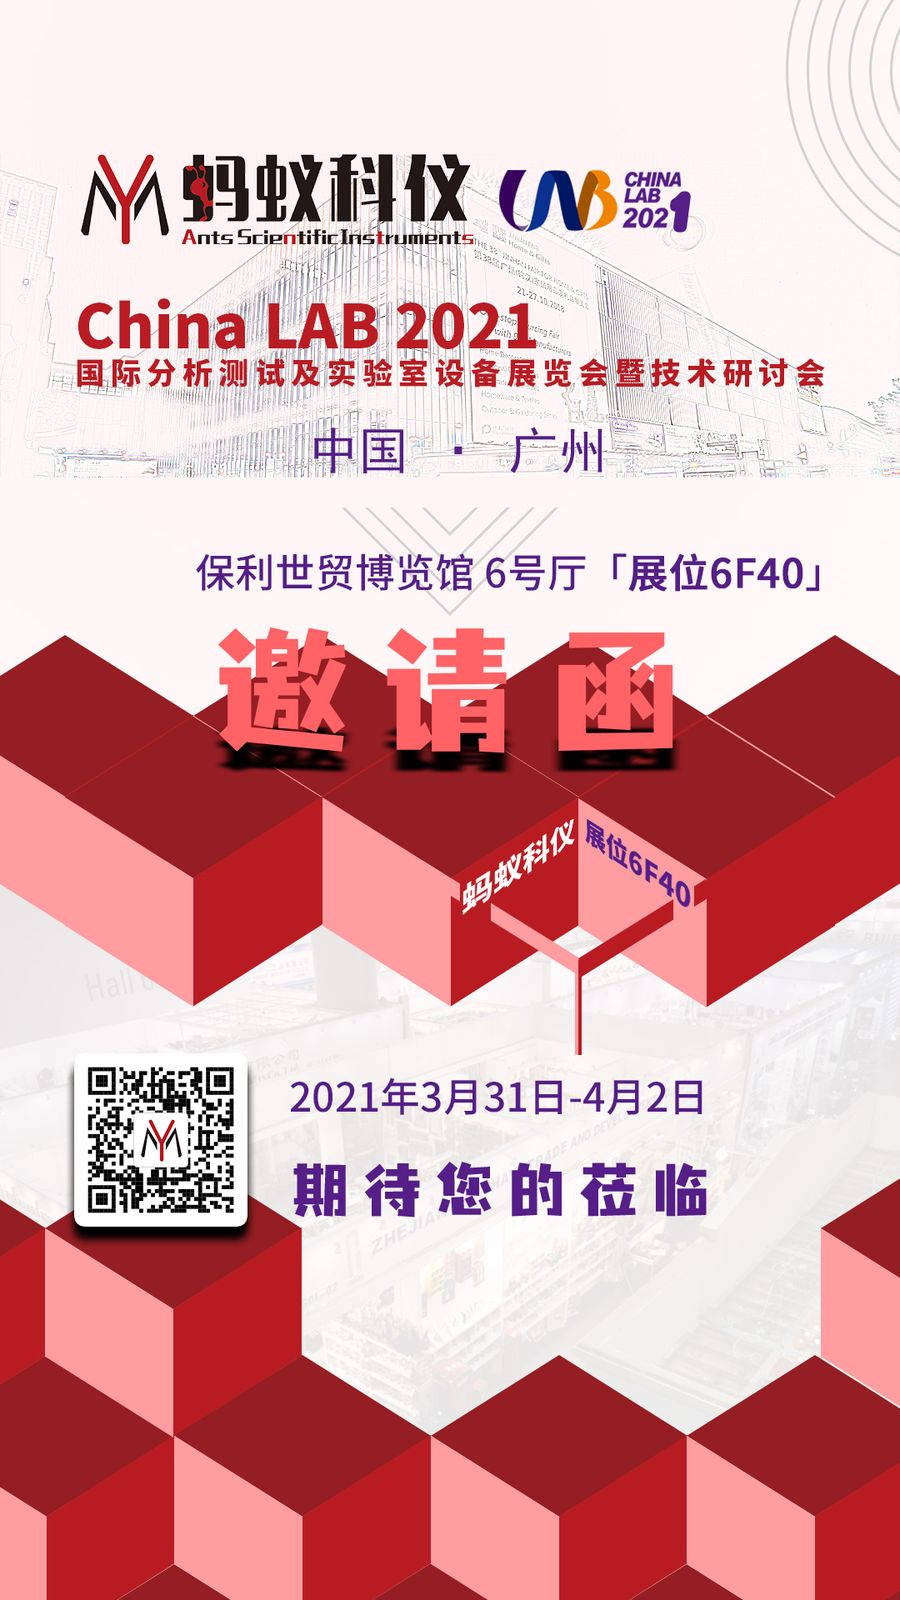 蚂蚁科仪 CHINA LAB 2021 科学仪器展邀请函